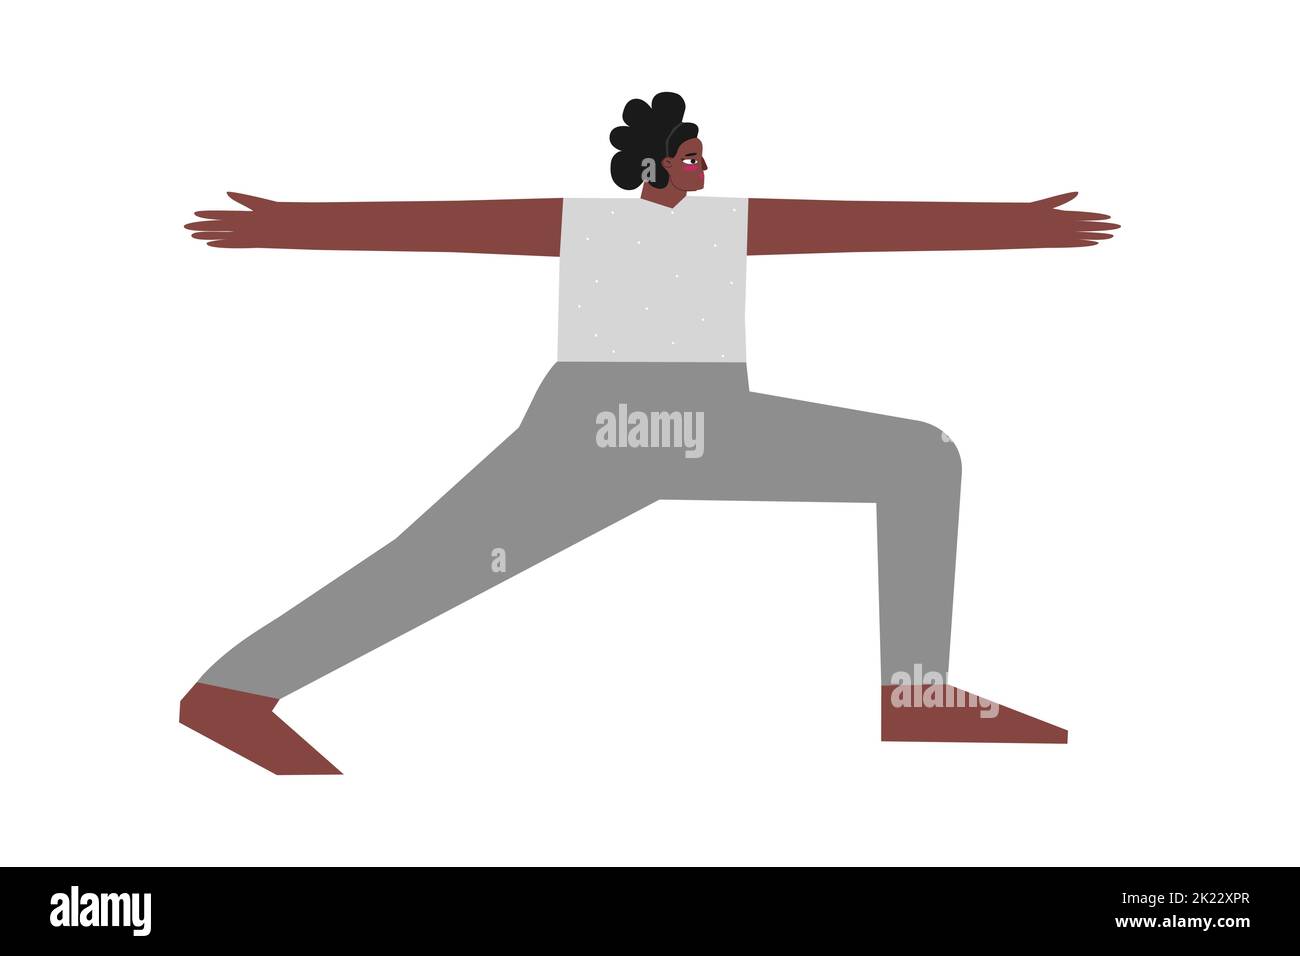 Vektor-isolierte Illustration mit flachem weiblichen Charakter. Die sportliche afroamerikanische Frau lernt beim Yoga-Kurs die Standhaltung Virabhadrasana II. Montage Stock Vektor